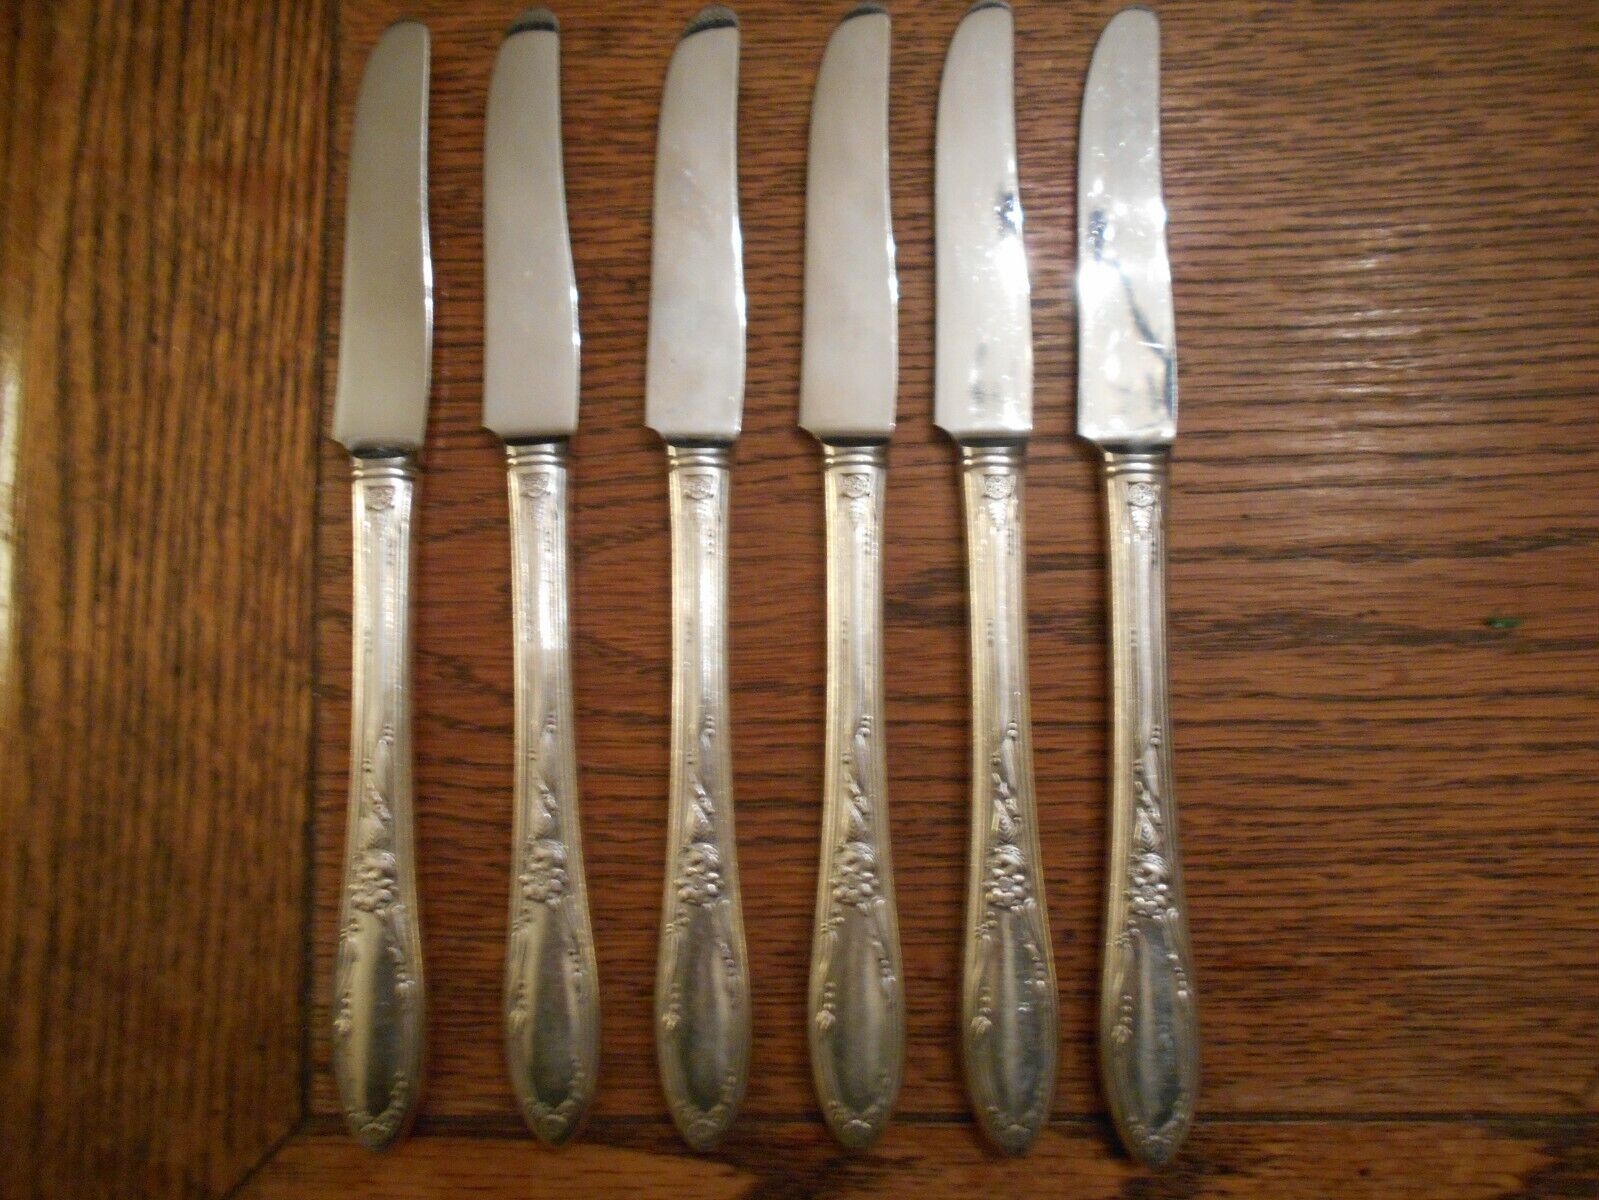 6 Rogers Silverplate 1934 CHATEAU Pattern Grille Viande Knives Oneida Ltd 5087